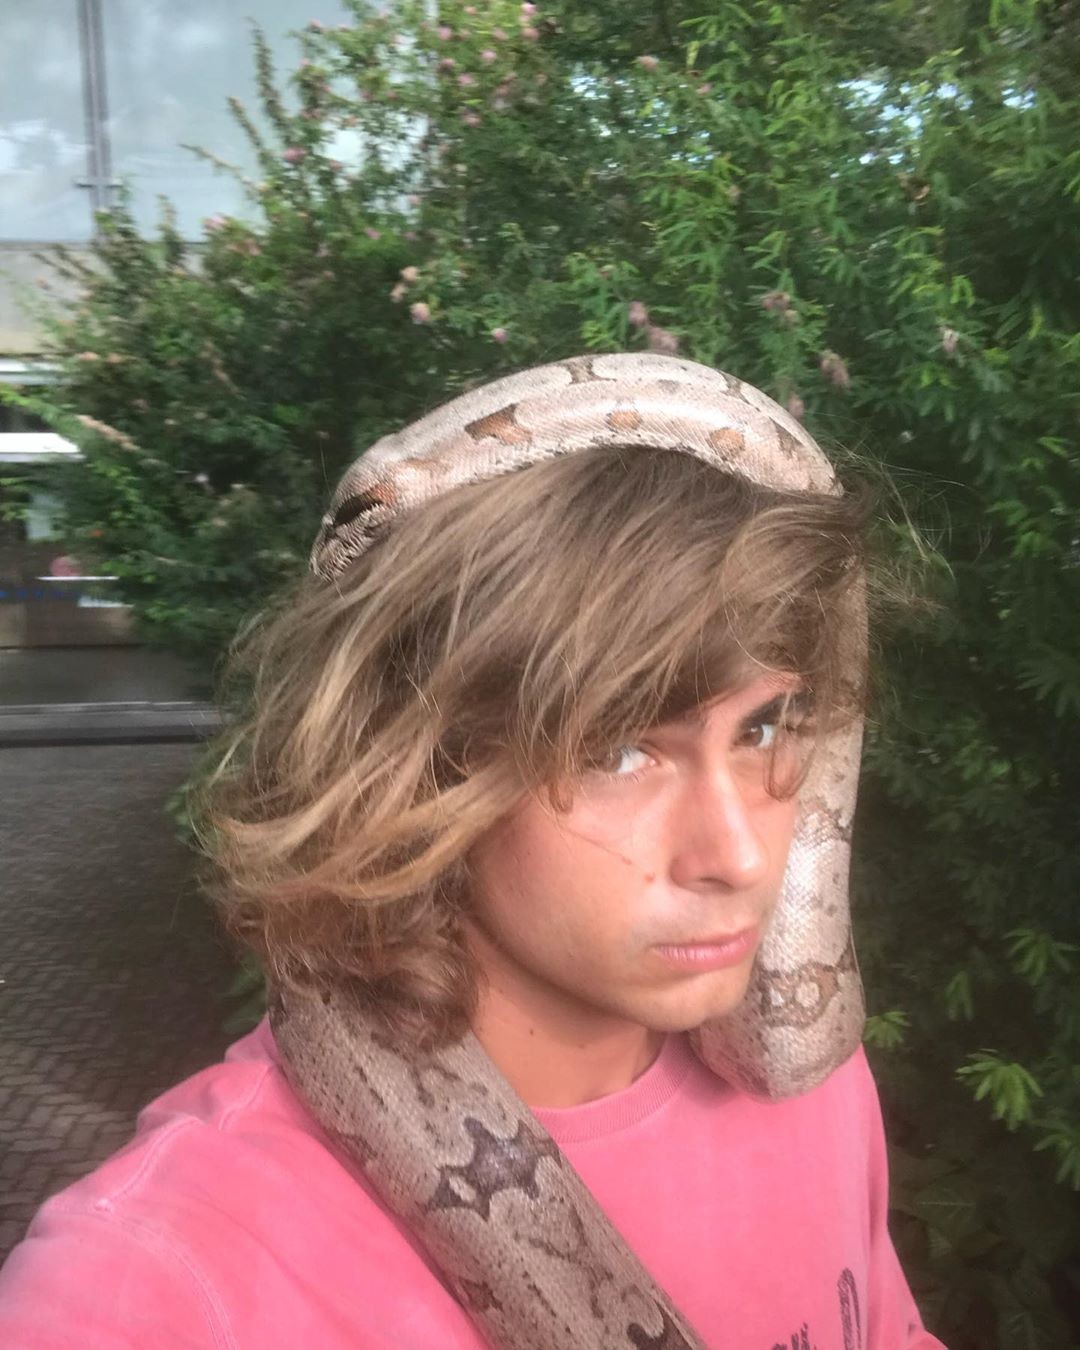 Rafael Vitti posa com cobra (Foto: Reprodução/Instagram)